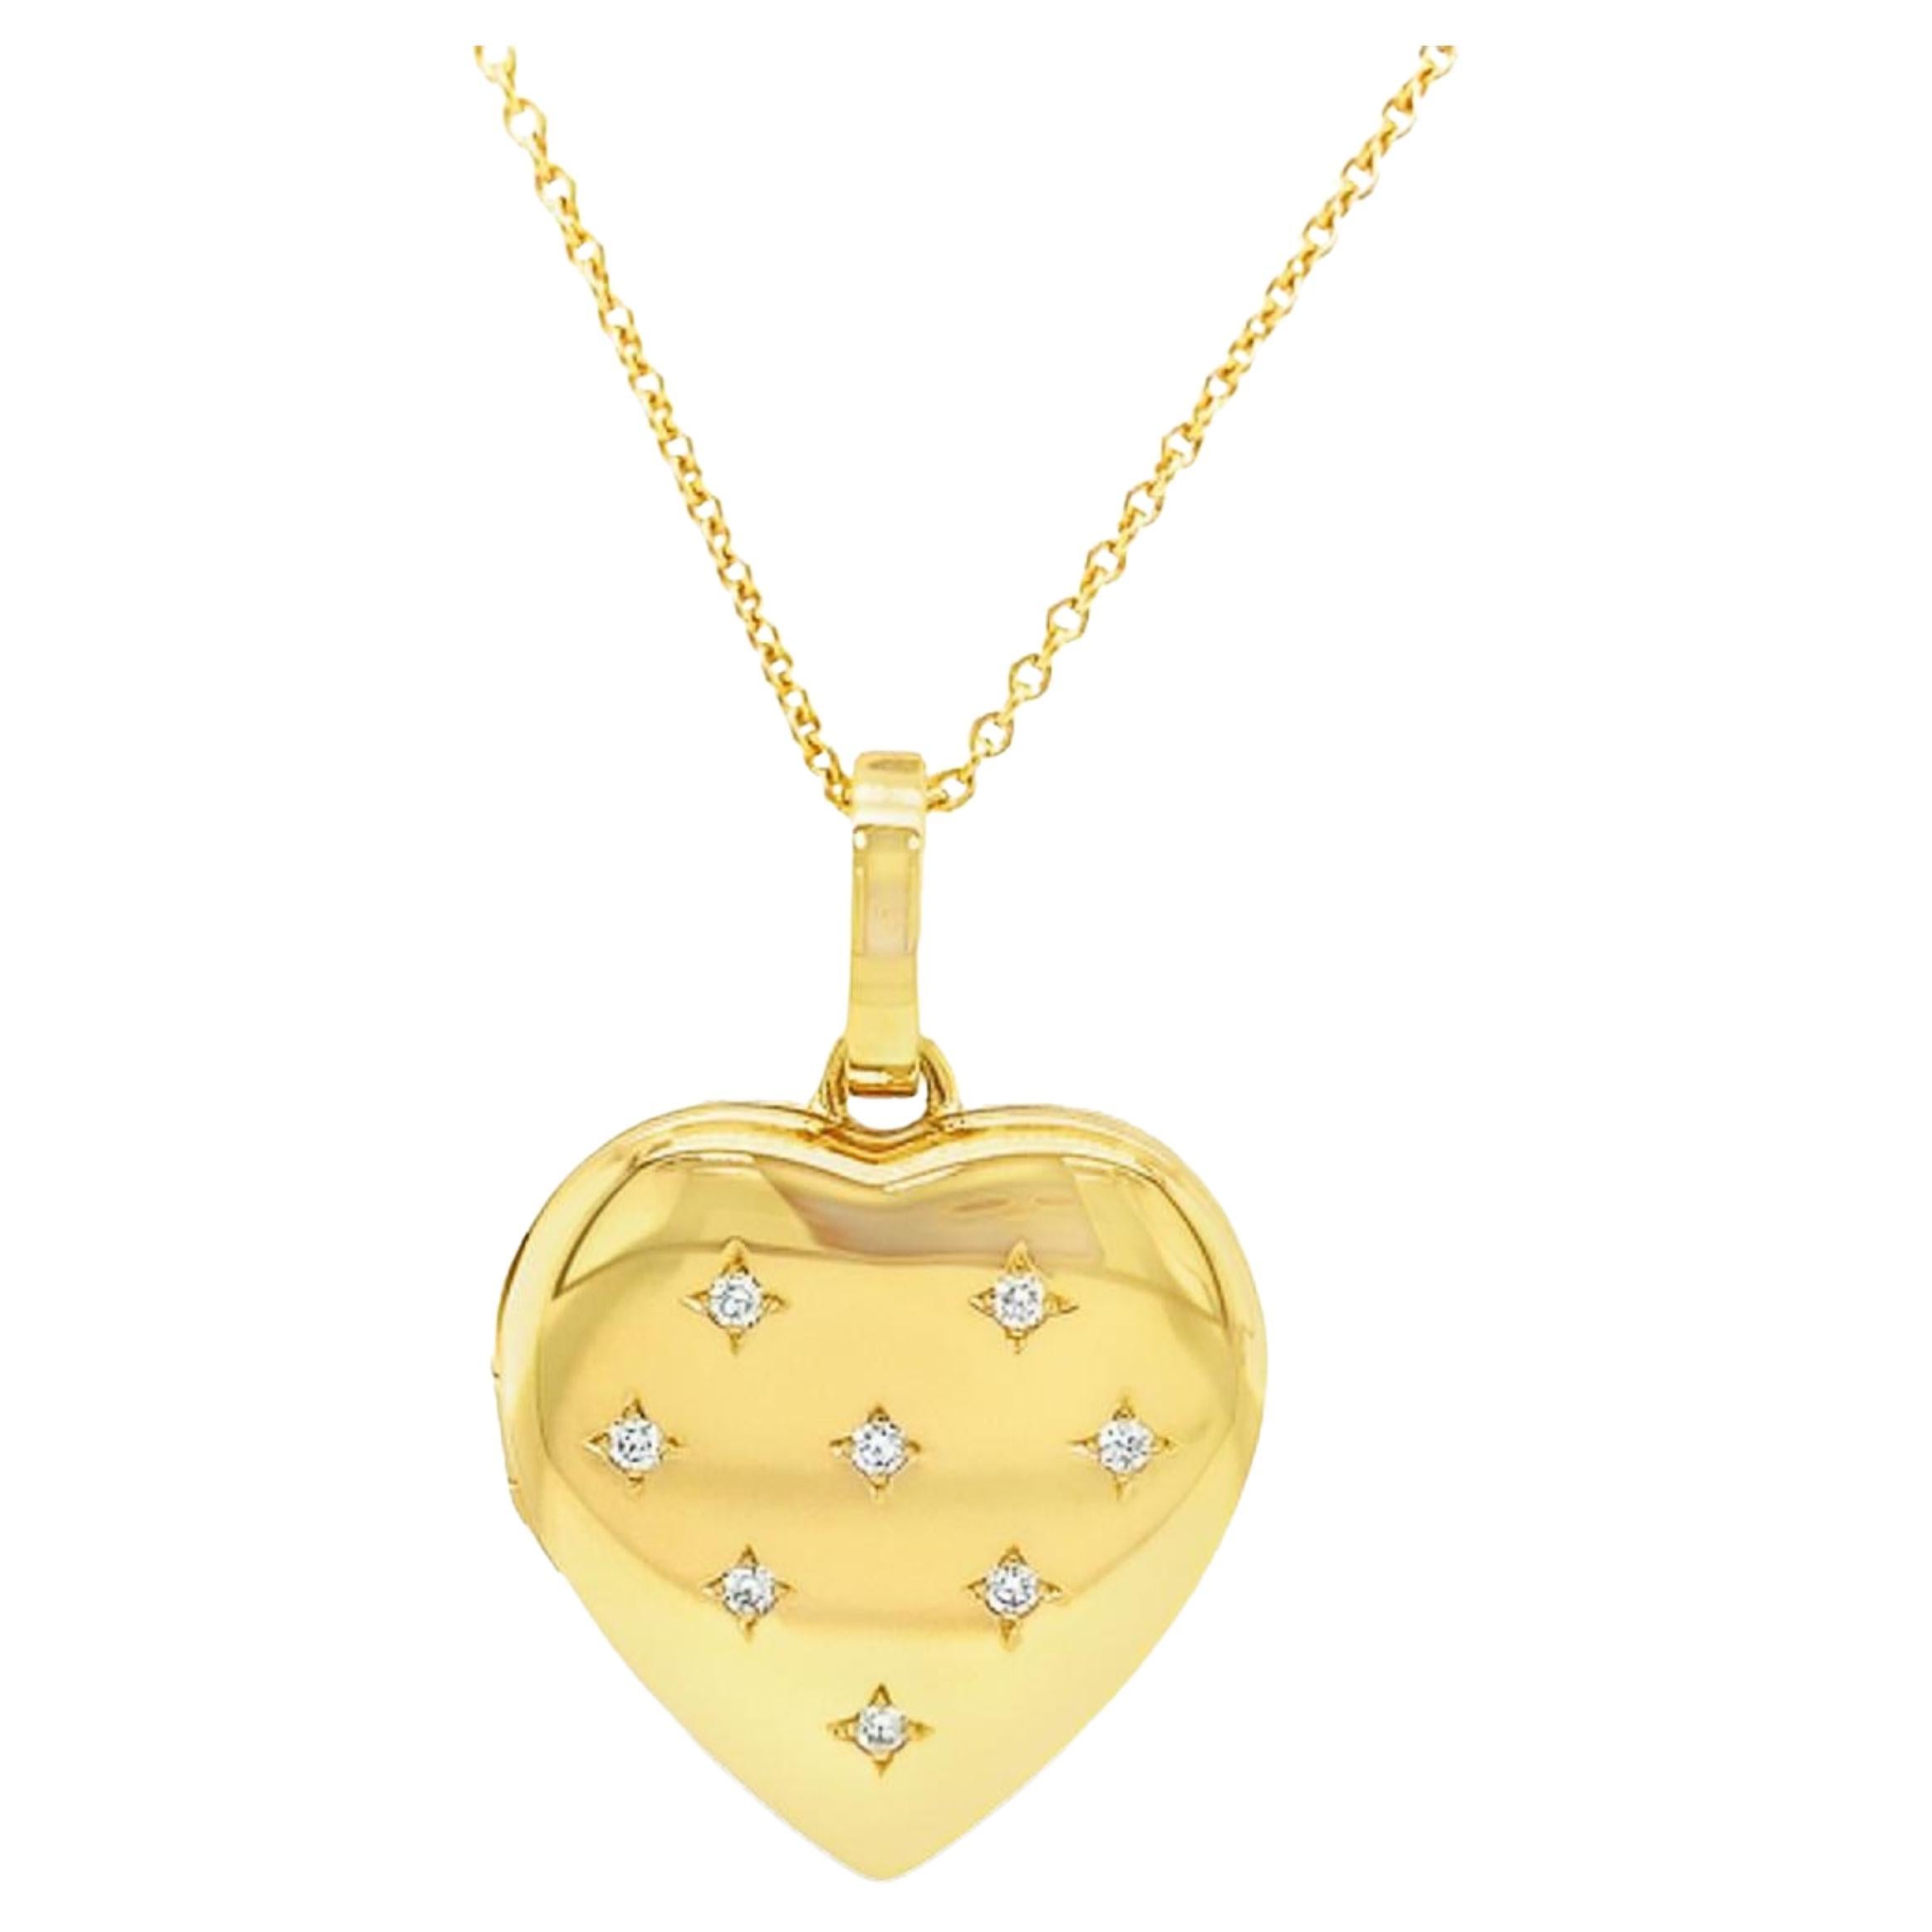 Pendentif médaillon en forme de cœur de Victor Mayer, or jaune 18 carats, 8 diamants 0,16 carat